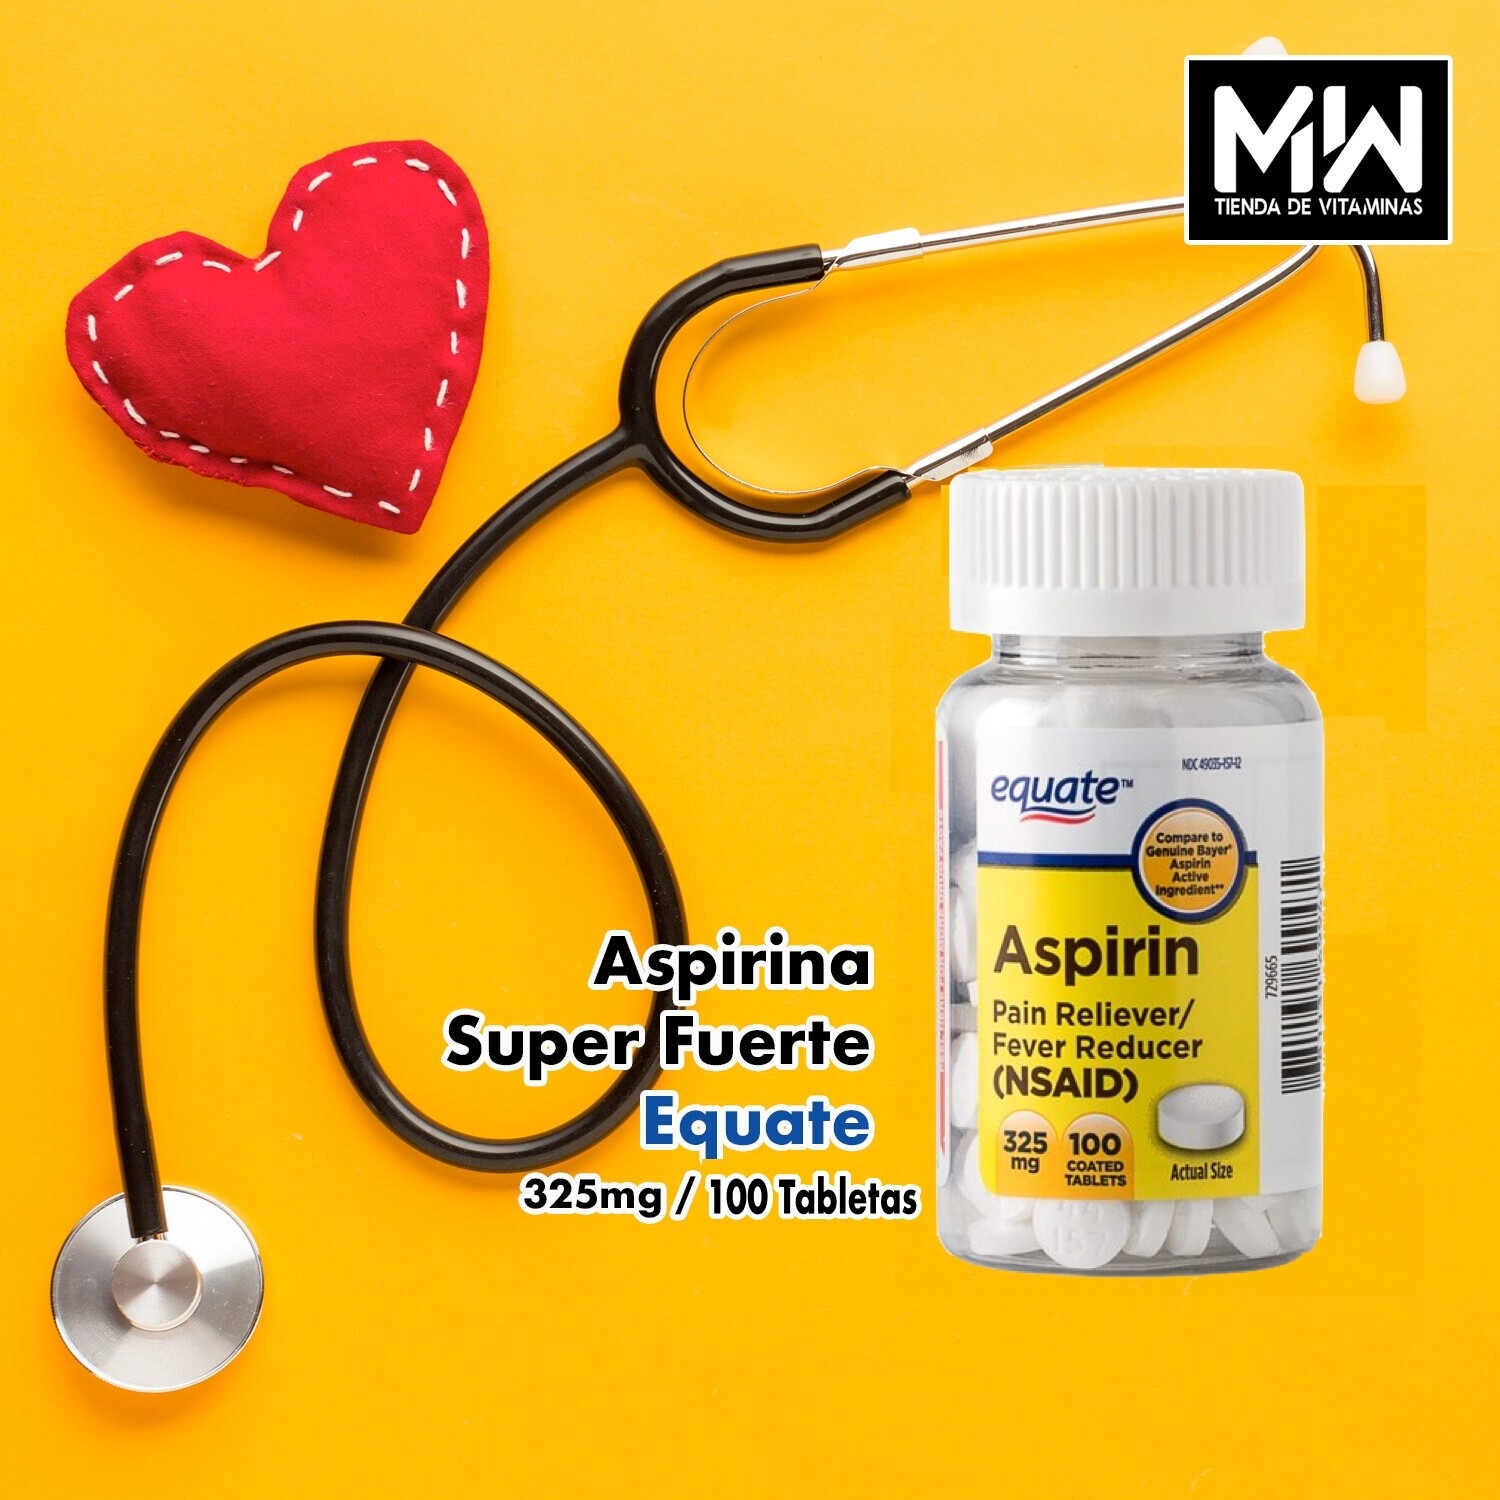 Aspirina Super Fuerte Equate / Aspirin Pain Reliever 325 mg 100 Tabs